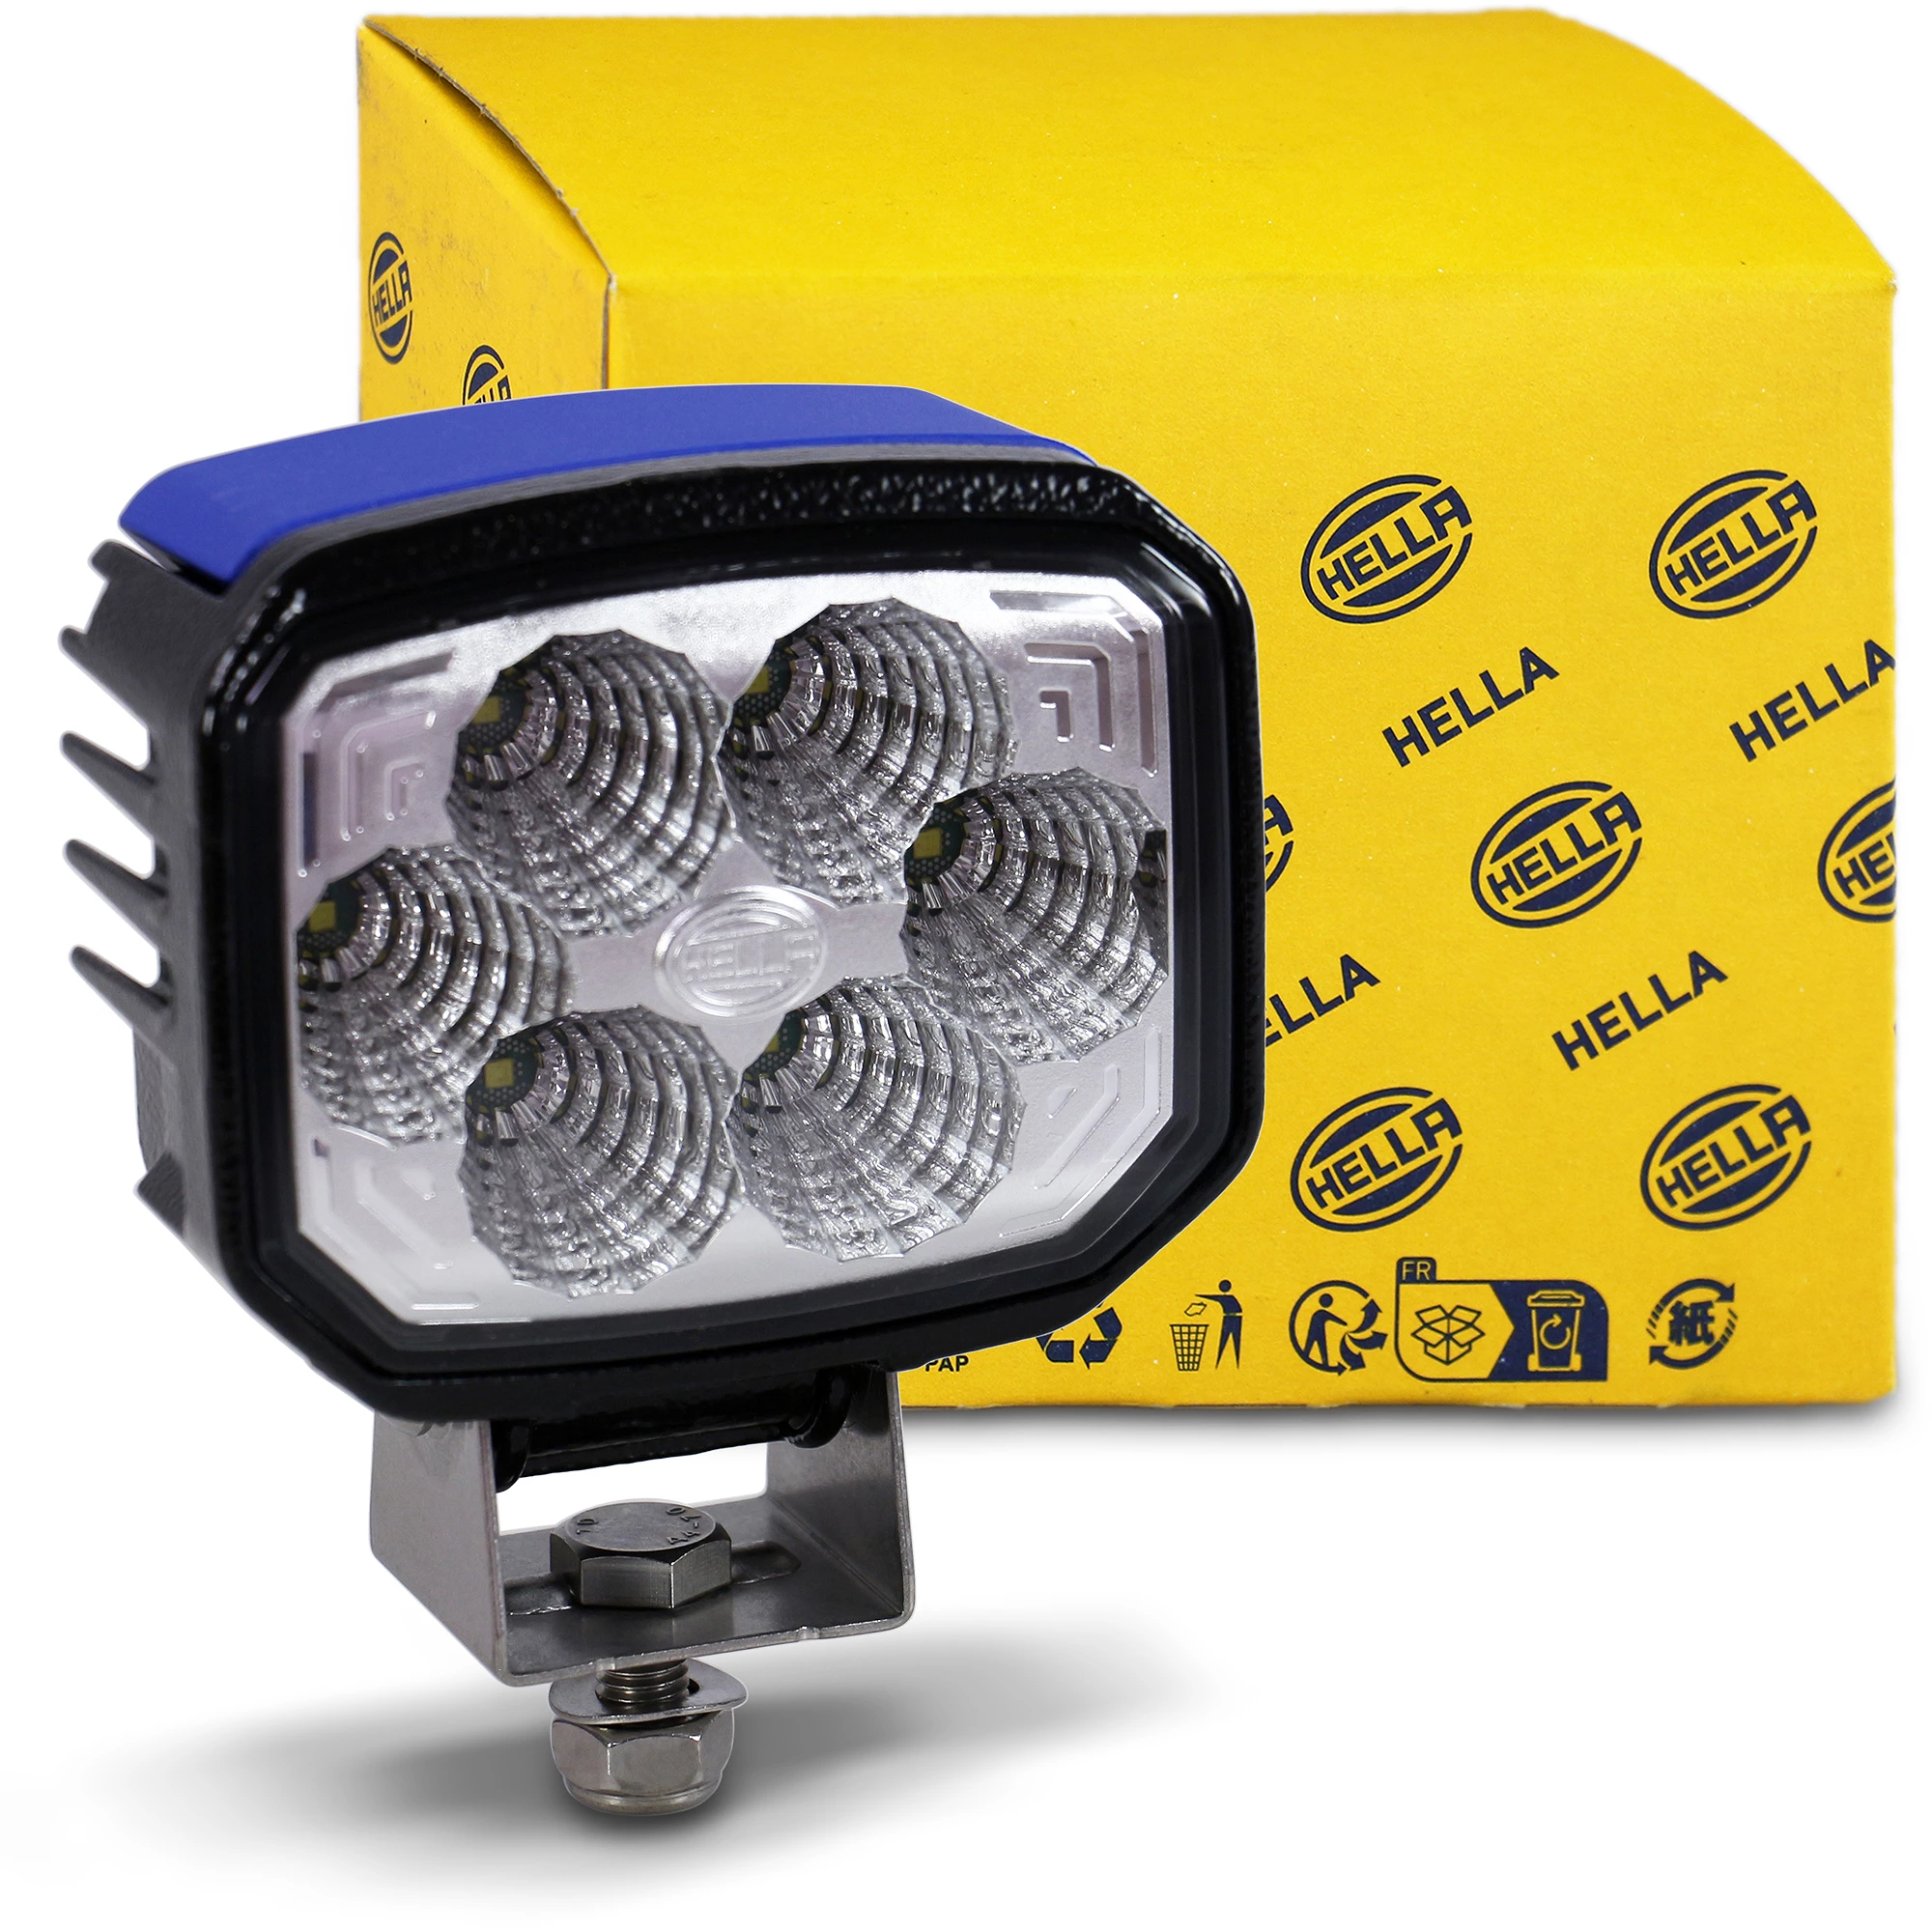 HELLA LED-Arbeitsscheinwerfer - Power Beam 1000 - 24/12V 1GA996188